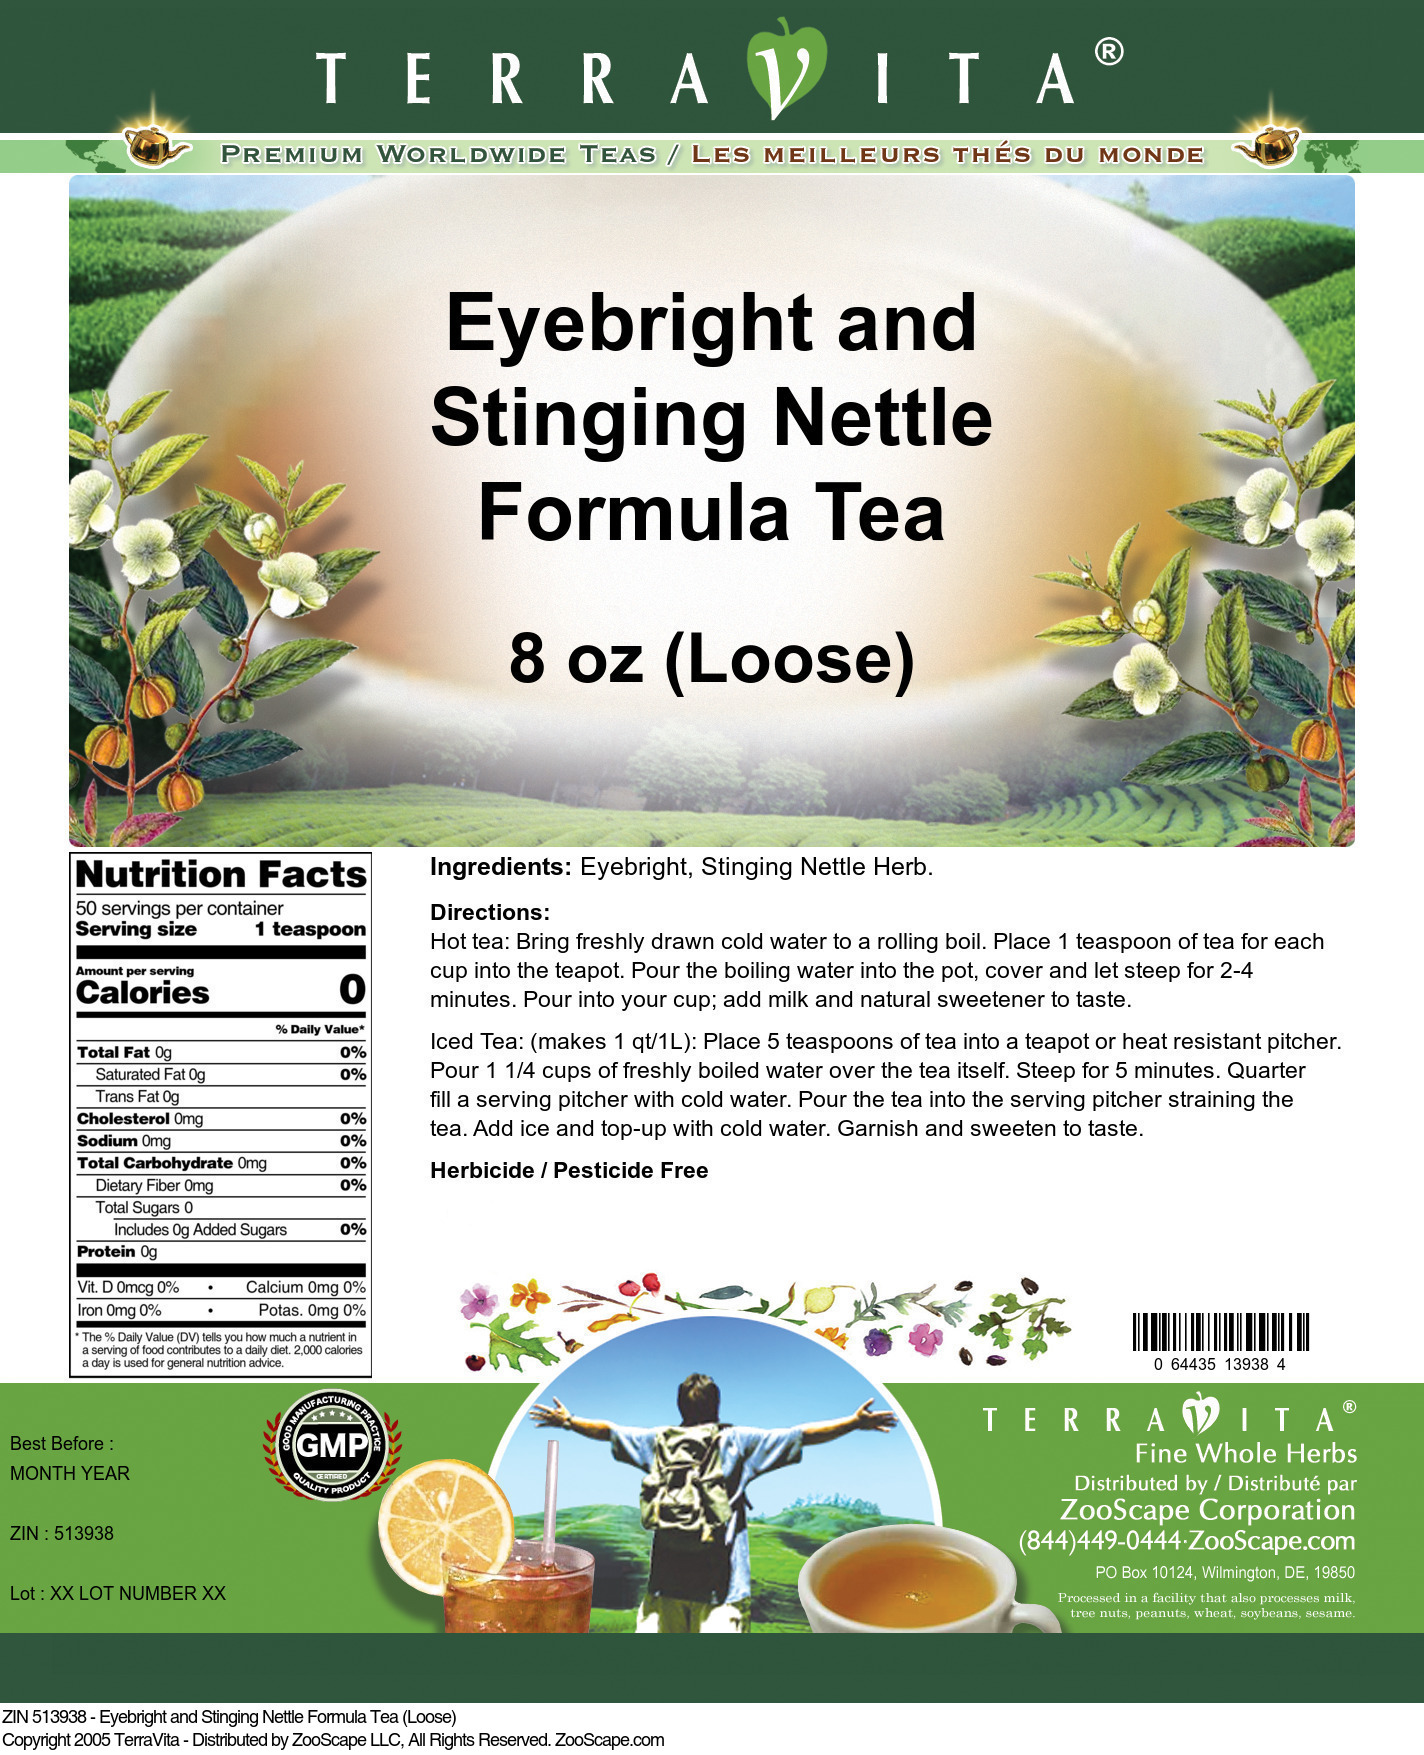 Eyebright and Stinging Nettle Formula Tea (Loose) - Label